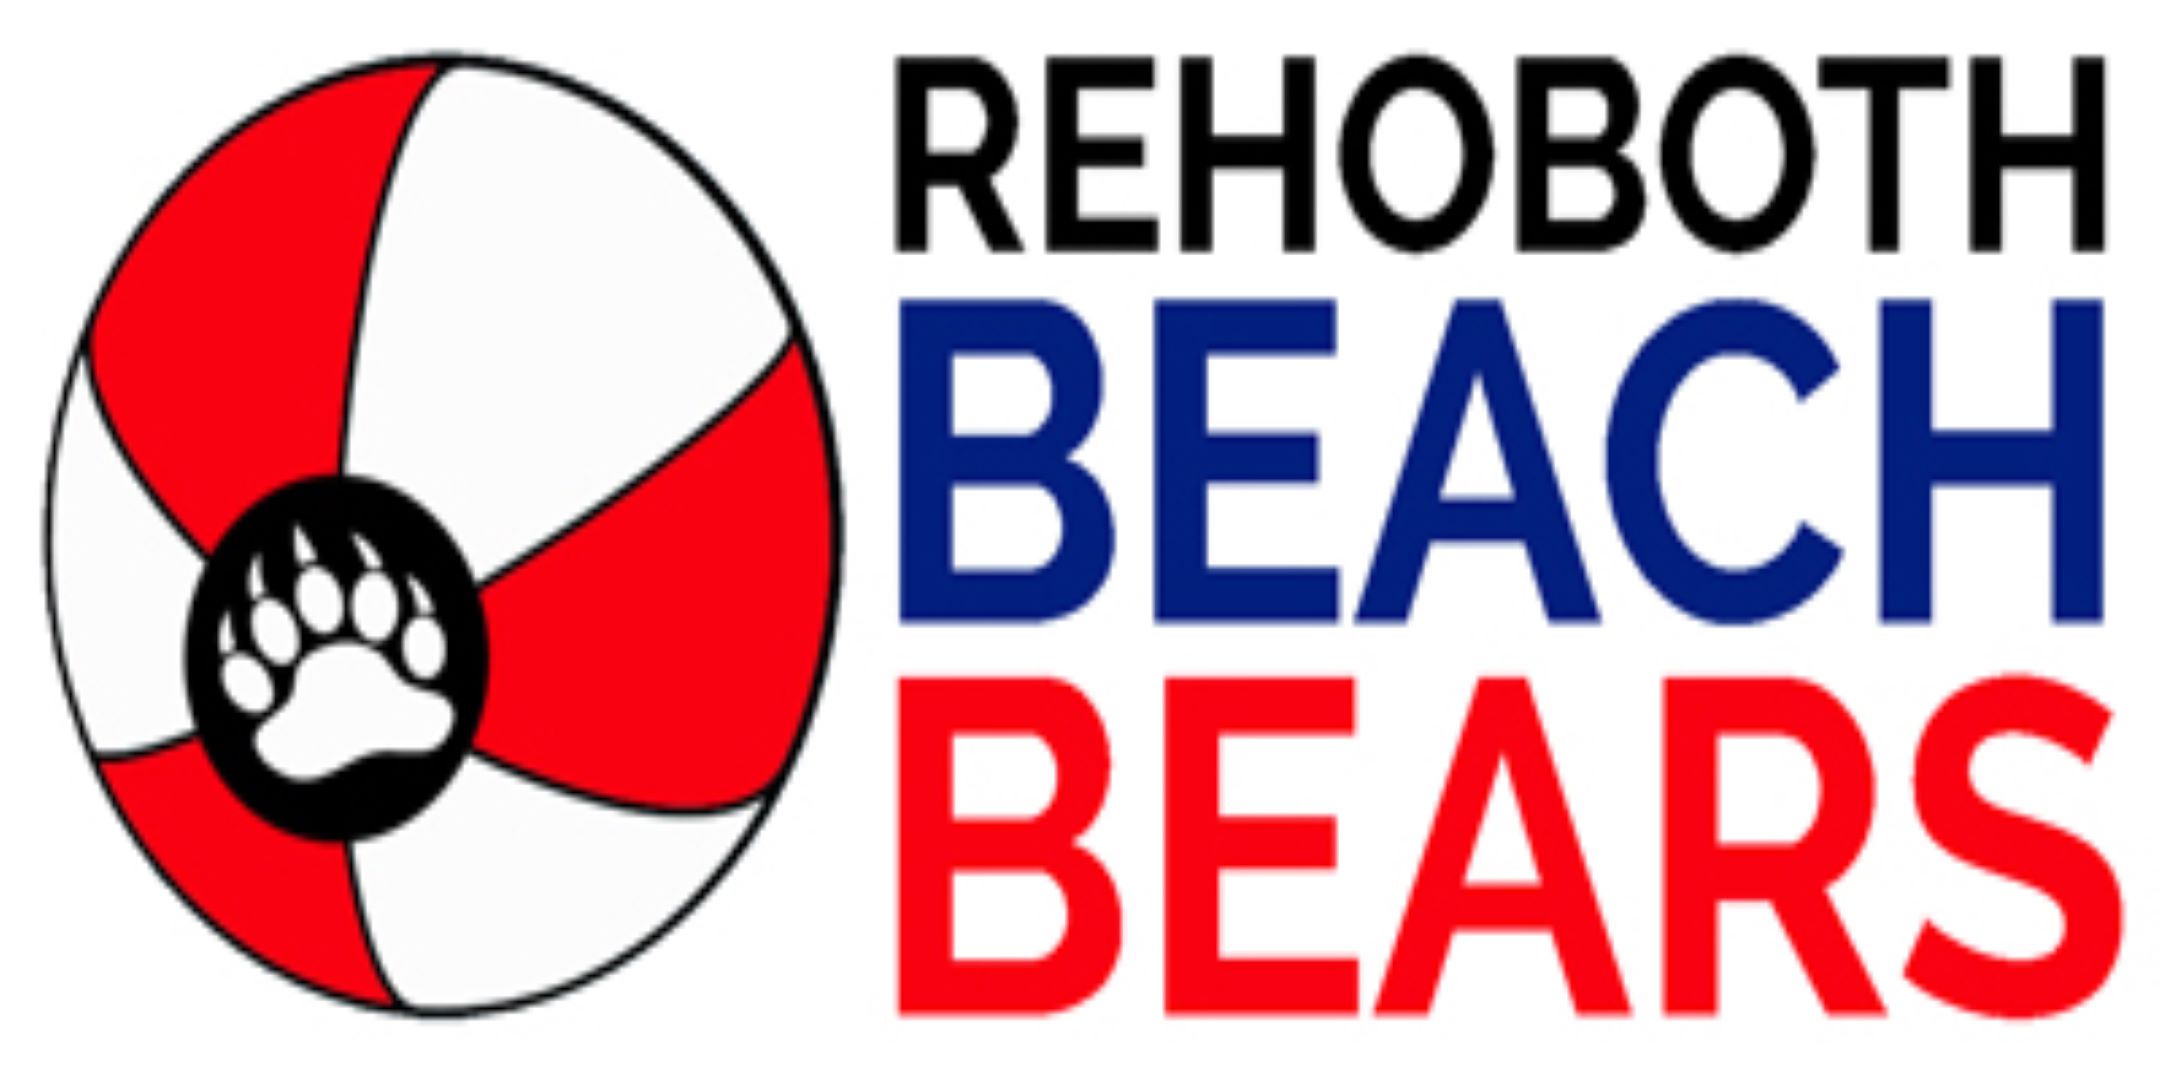 RBB Logo